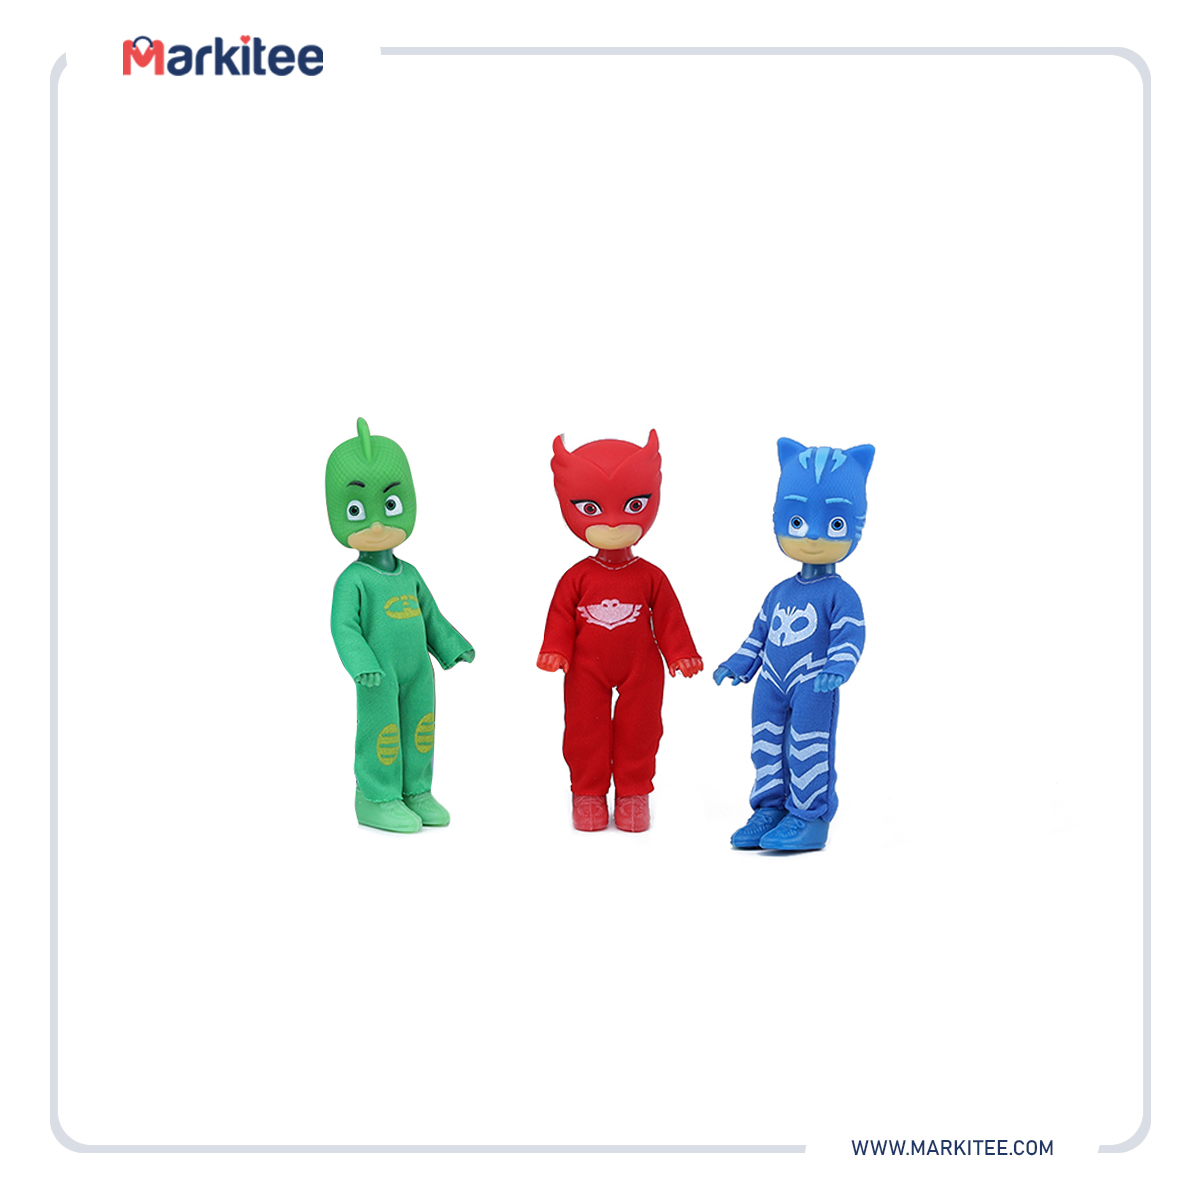 ماركيتي-markitee-20220627152604628_Markitee-toys-ty--1091(1).jpg